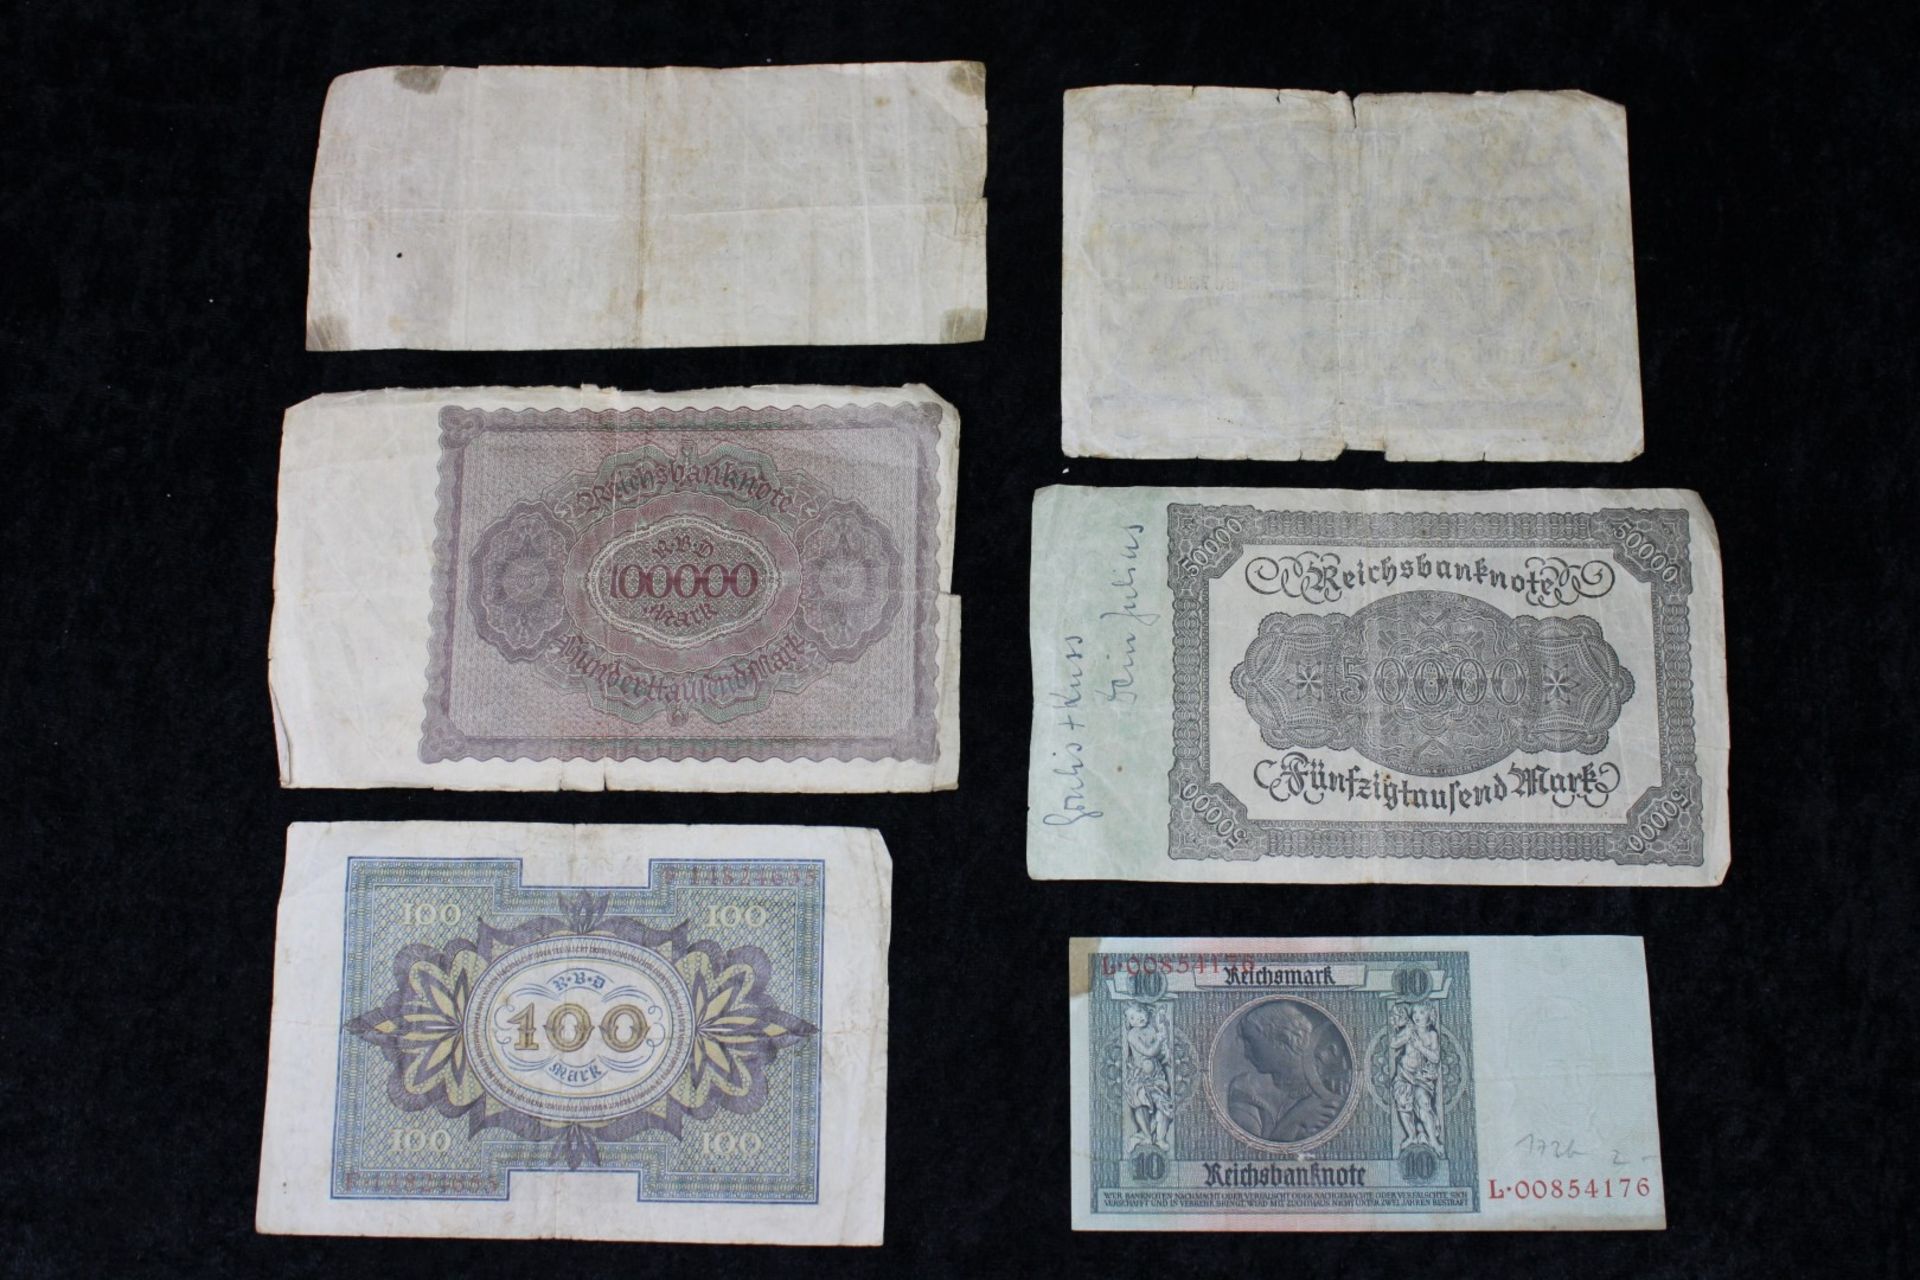 6 Reichsbanknoten, Reichsmark von 1920 ,1922, 1923, 1929 - Image 2 of 2